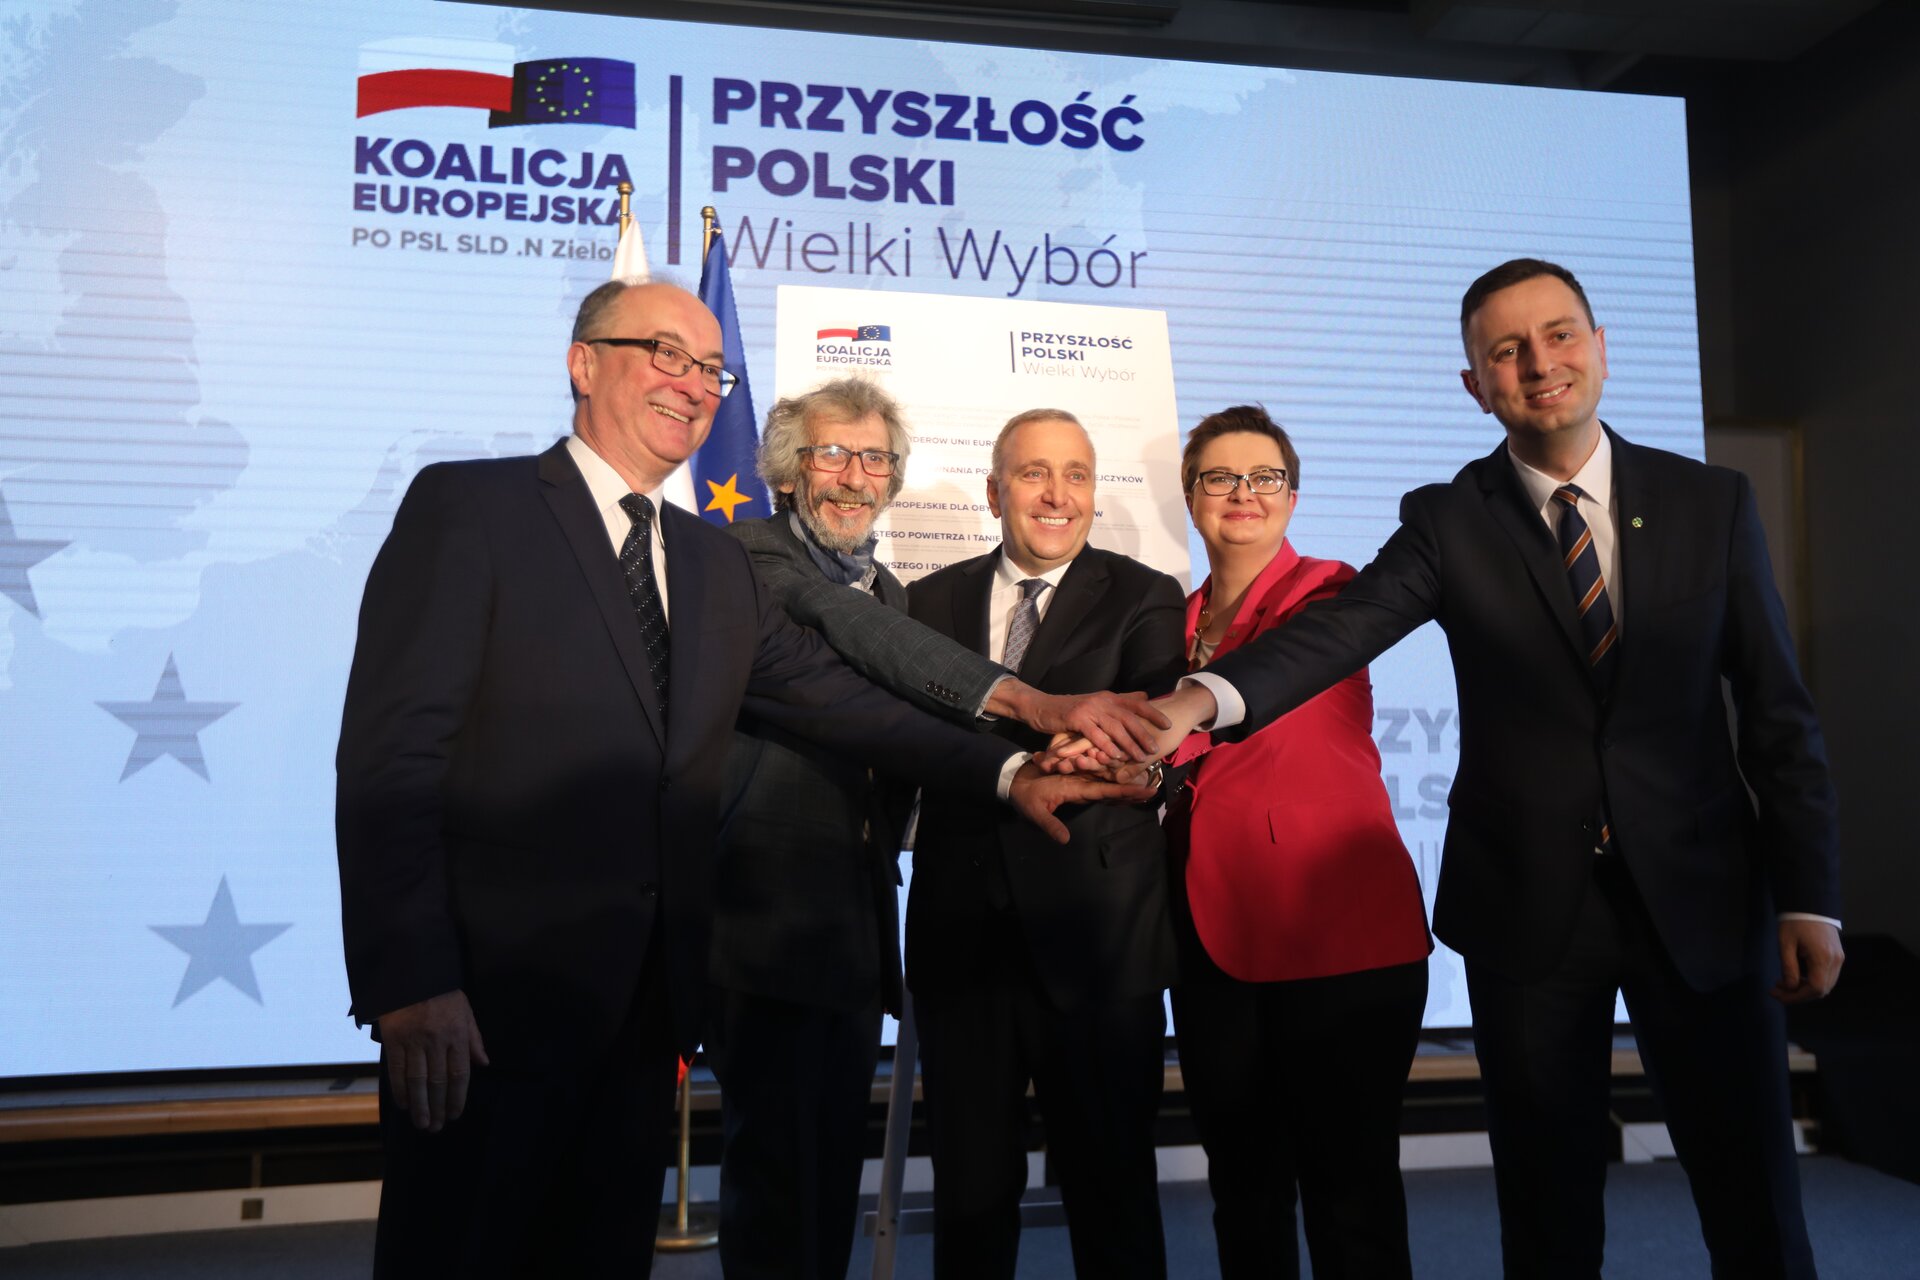 Zdjęcie przedstawia pięć osób, trzymających ręce - jedna na drugiej. Na zdjęciu są między innymi: Władysław Kosiniak-Kamysz, Katarzyna Lubnauer, Grzegorz Schetyna, Włodzimierz Czarzasty i przedstawiciel Partii Zielonych.